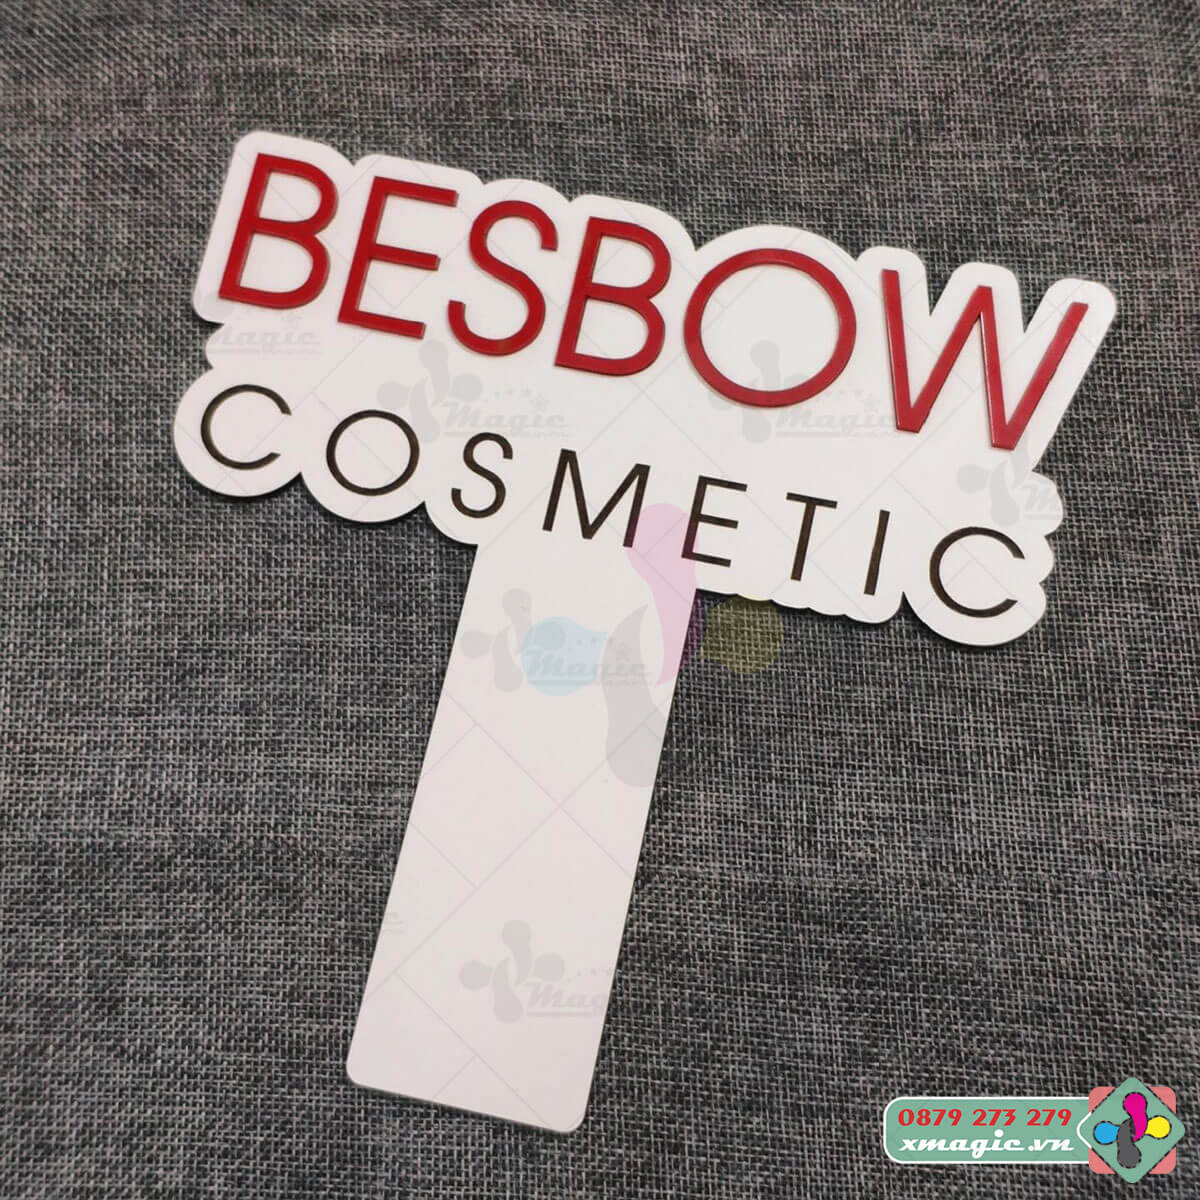 Bảng Hashtag cầm tay chụp ảnh checkin khai trương Besbow Cosmetic 